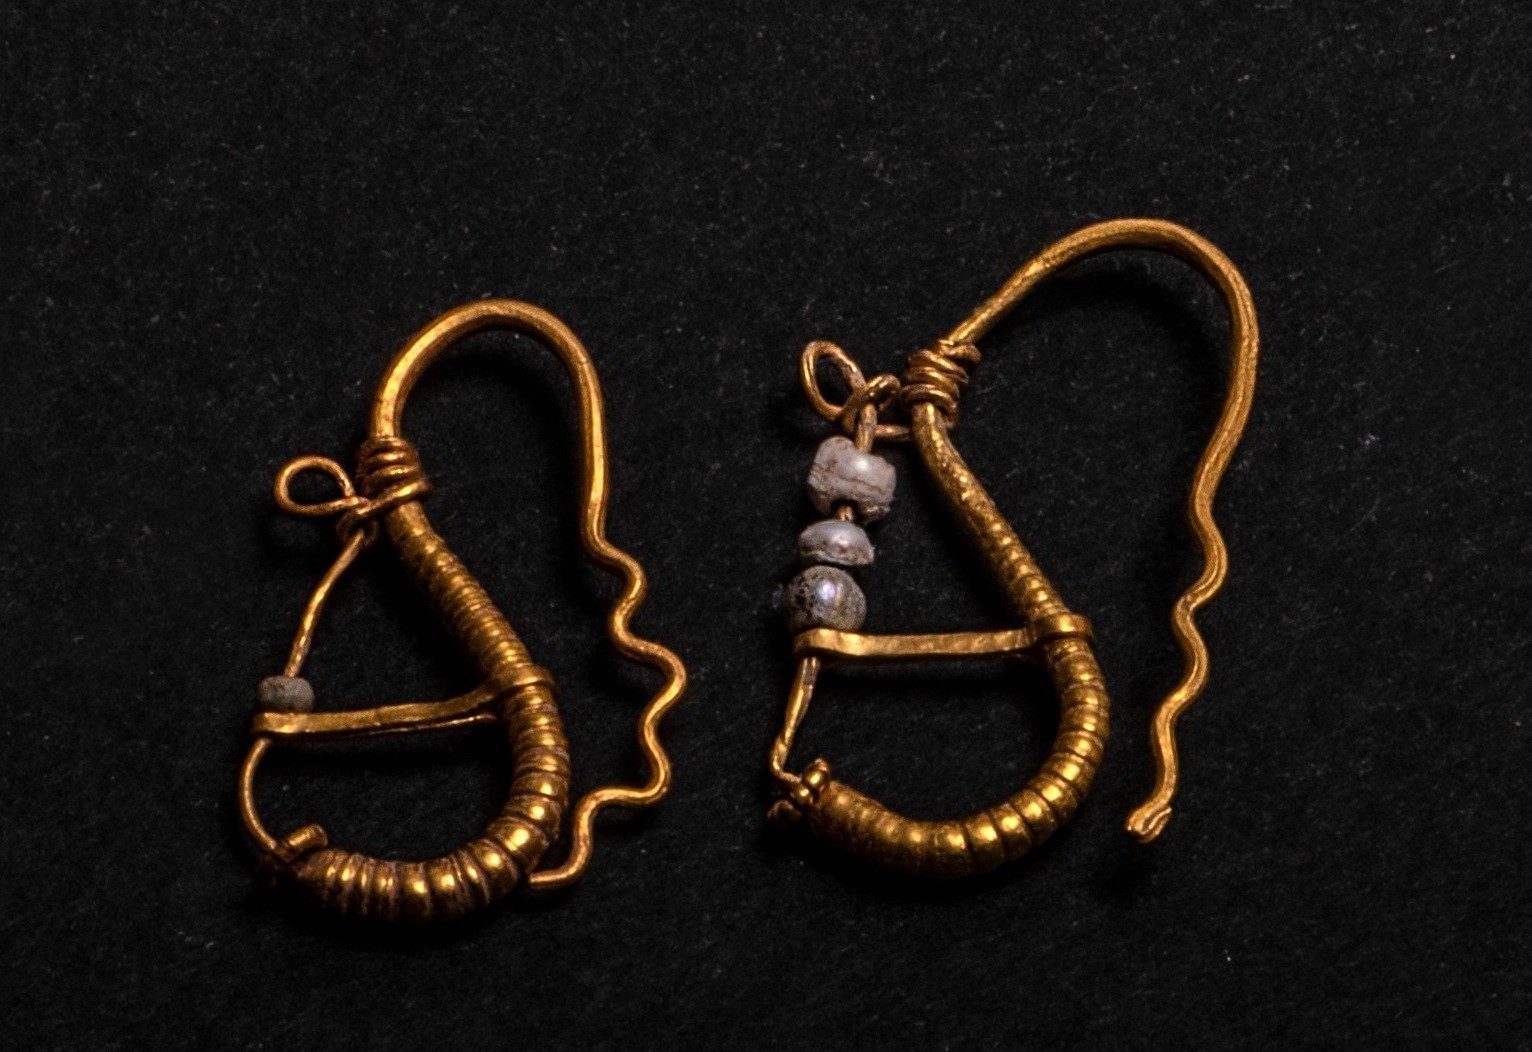 Χρυσά σκουλαρίκια με γυάλινες χάντρες, από το νεκροταφείο της αρχαίας πόλης της Μήλου